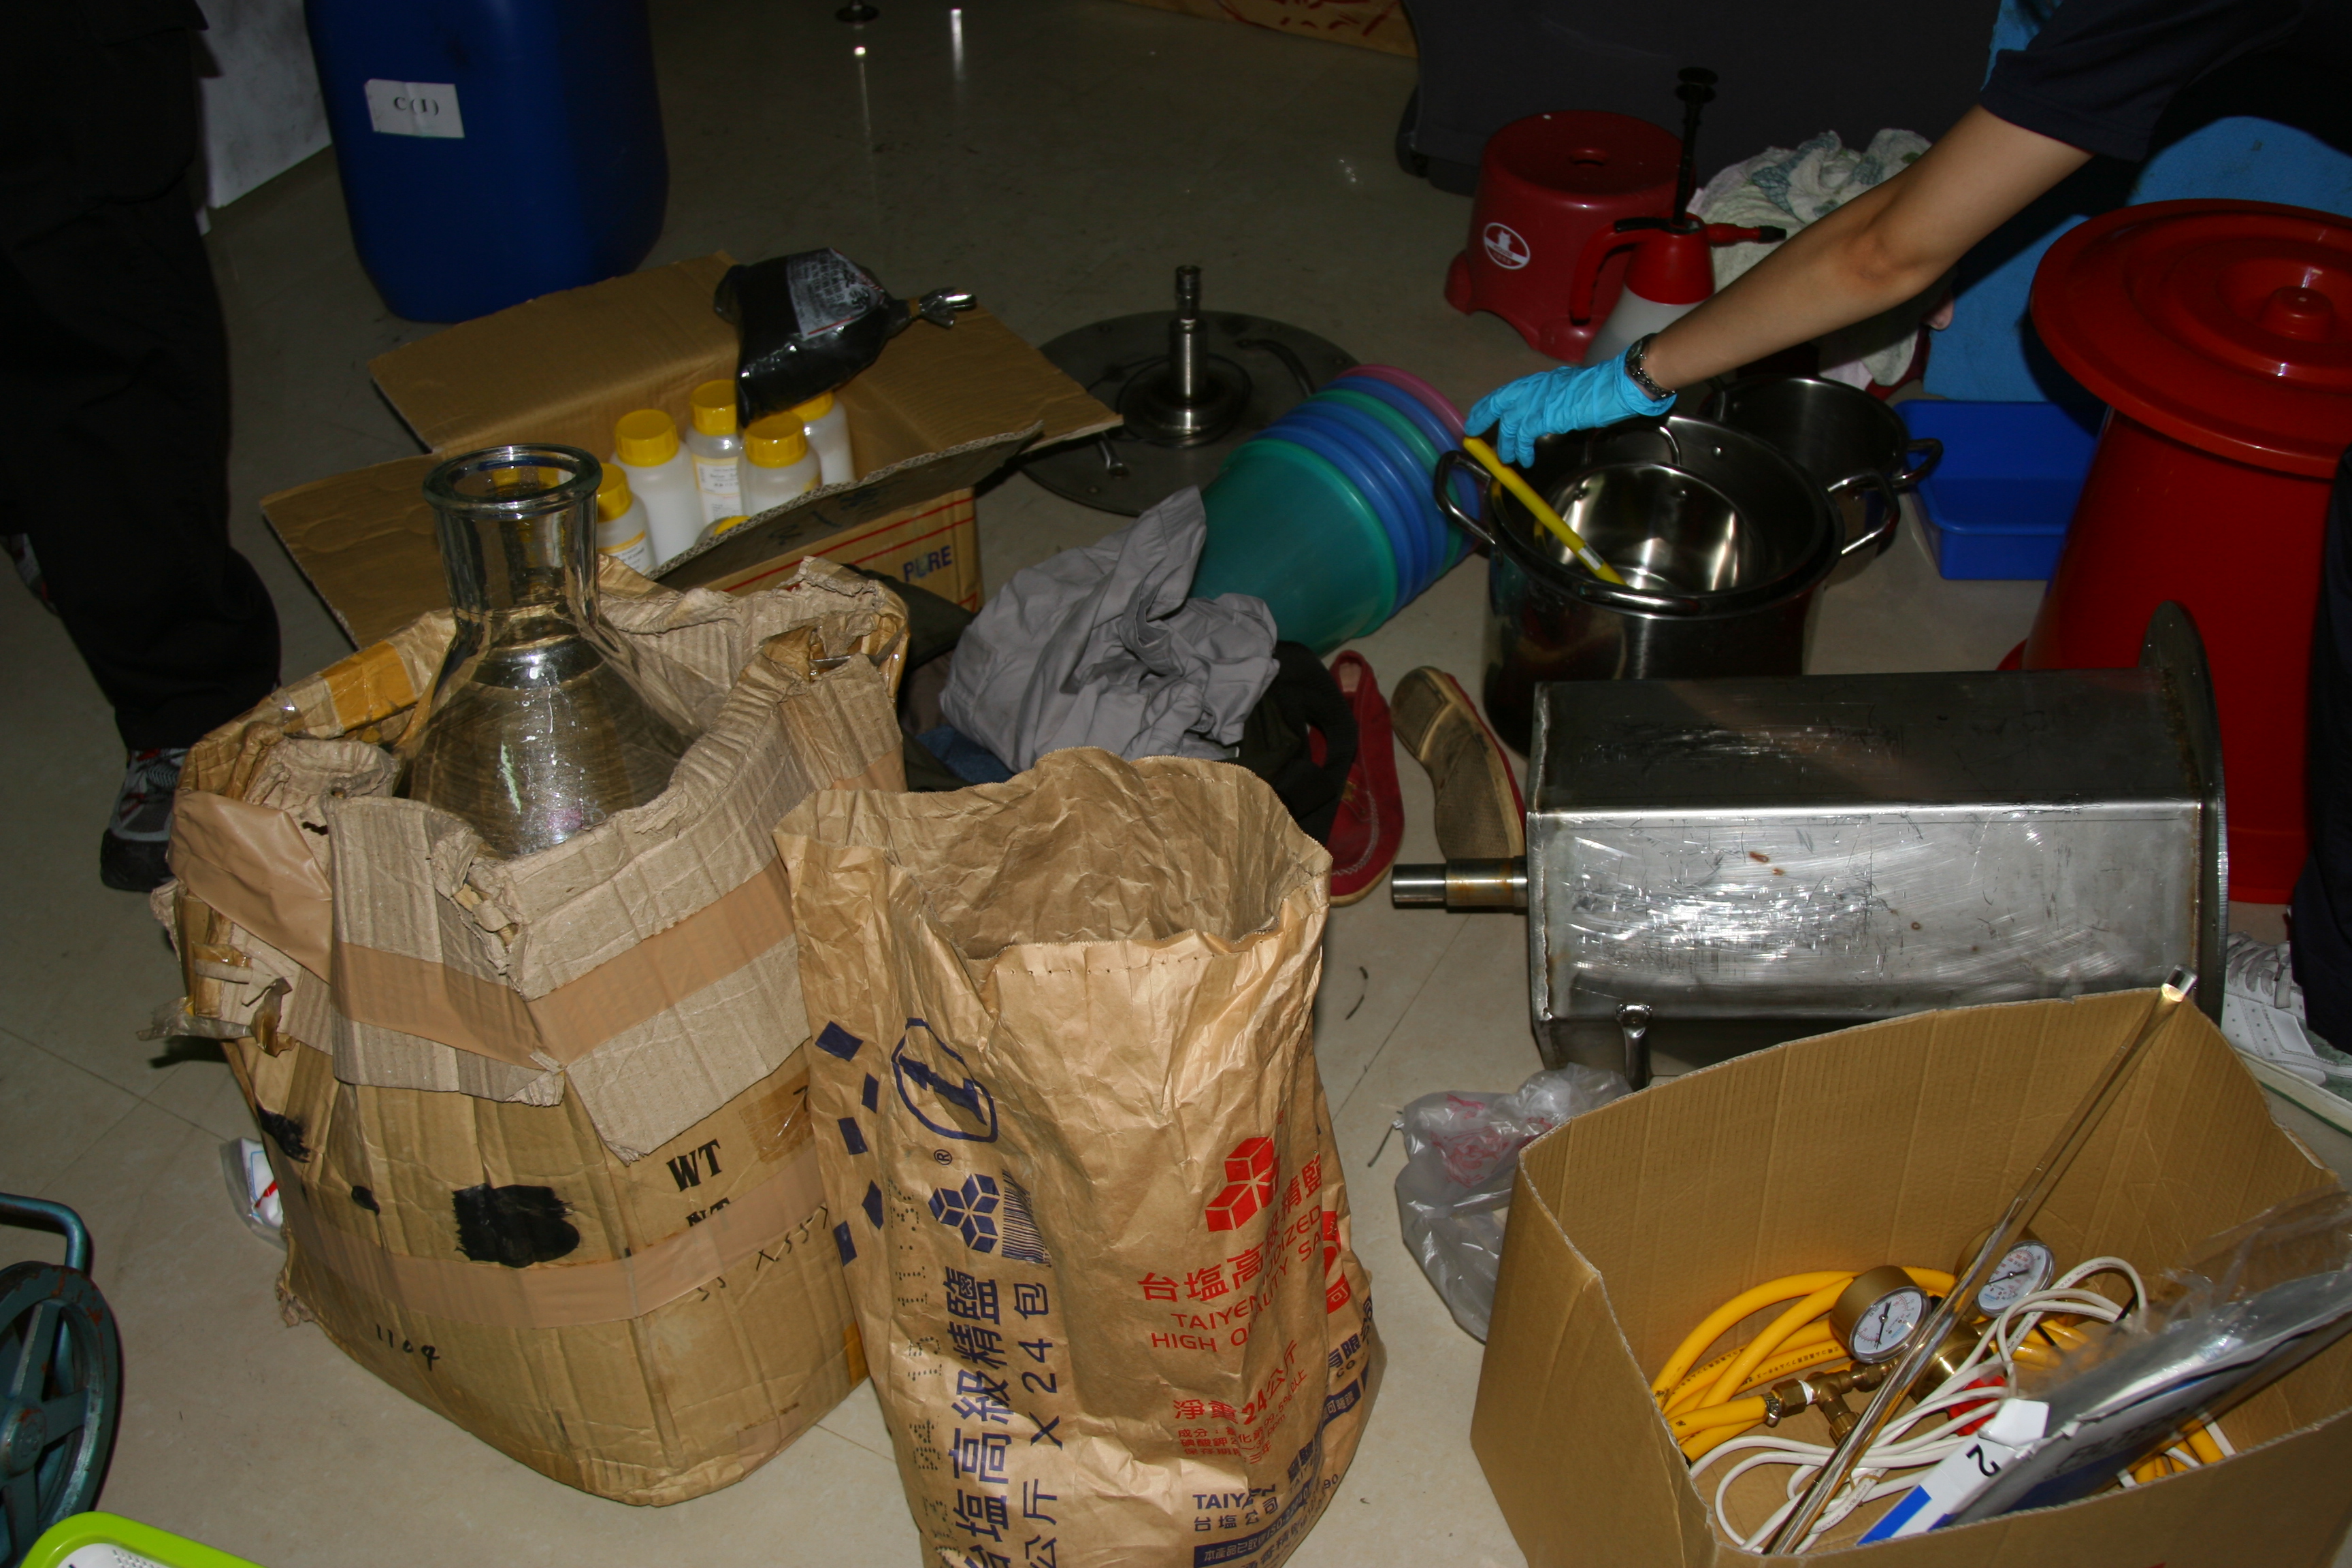 許多毒品製造器具可在化工材料行購得，圖為查扣之部分毒品製造器具與原料